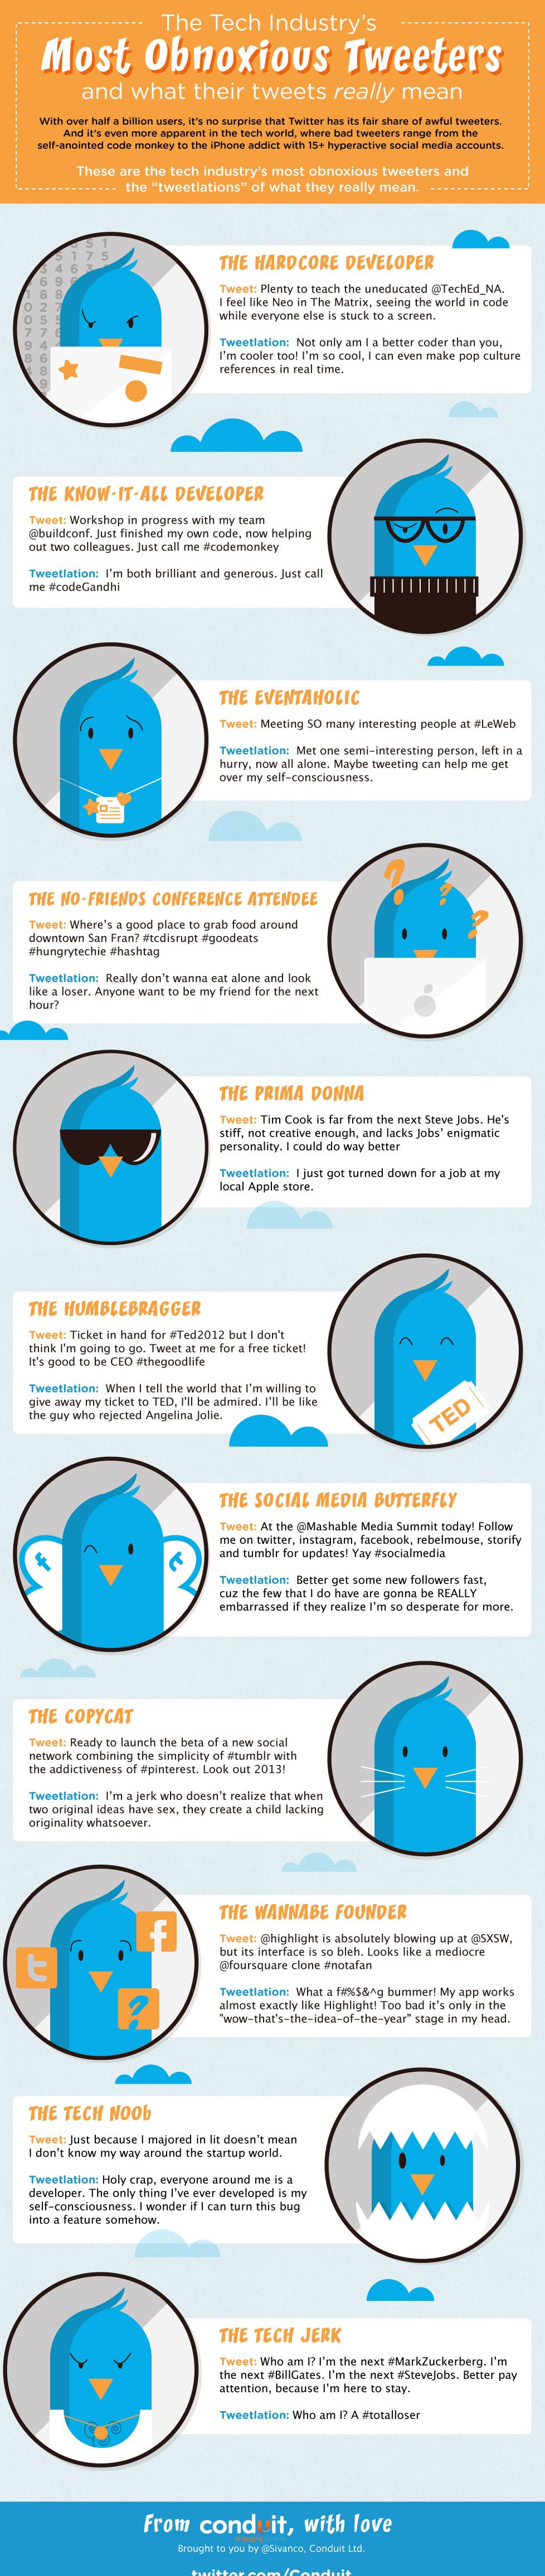 tech-industry-rude-tweeters-infographic